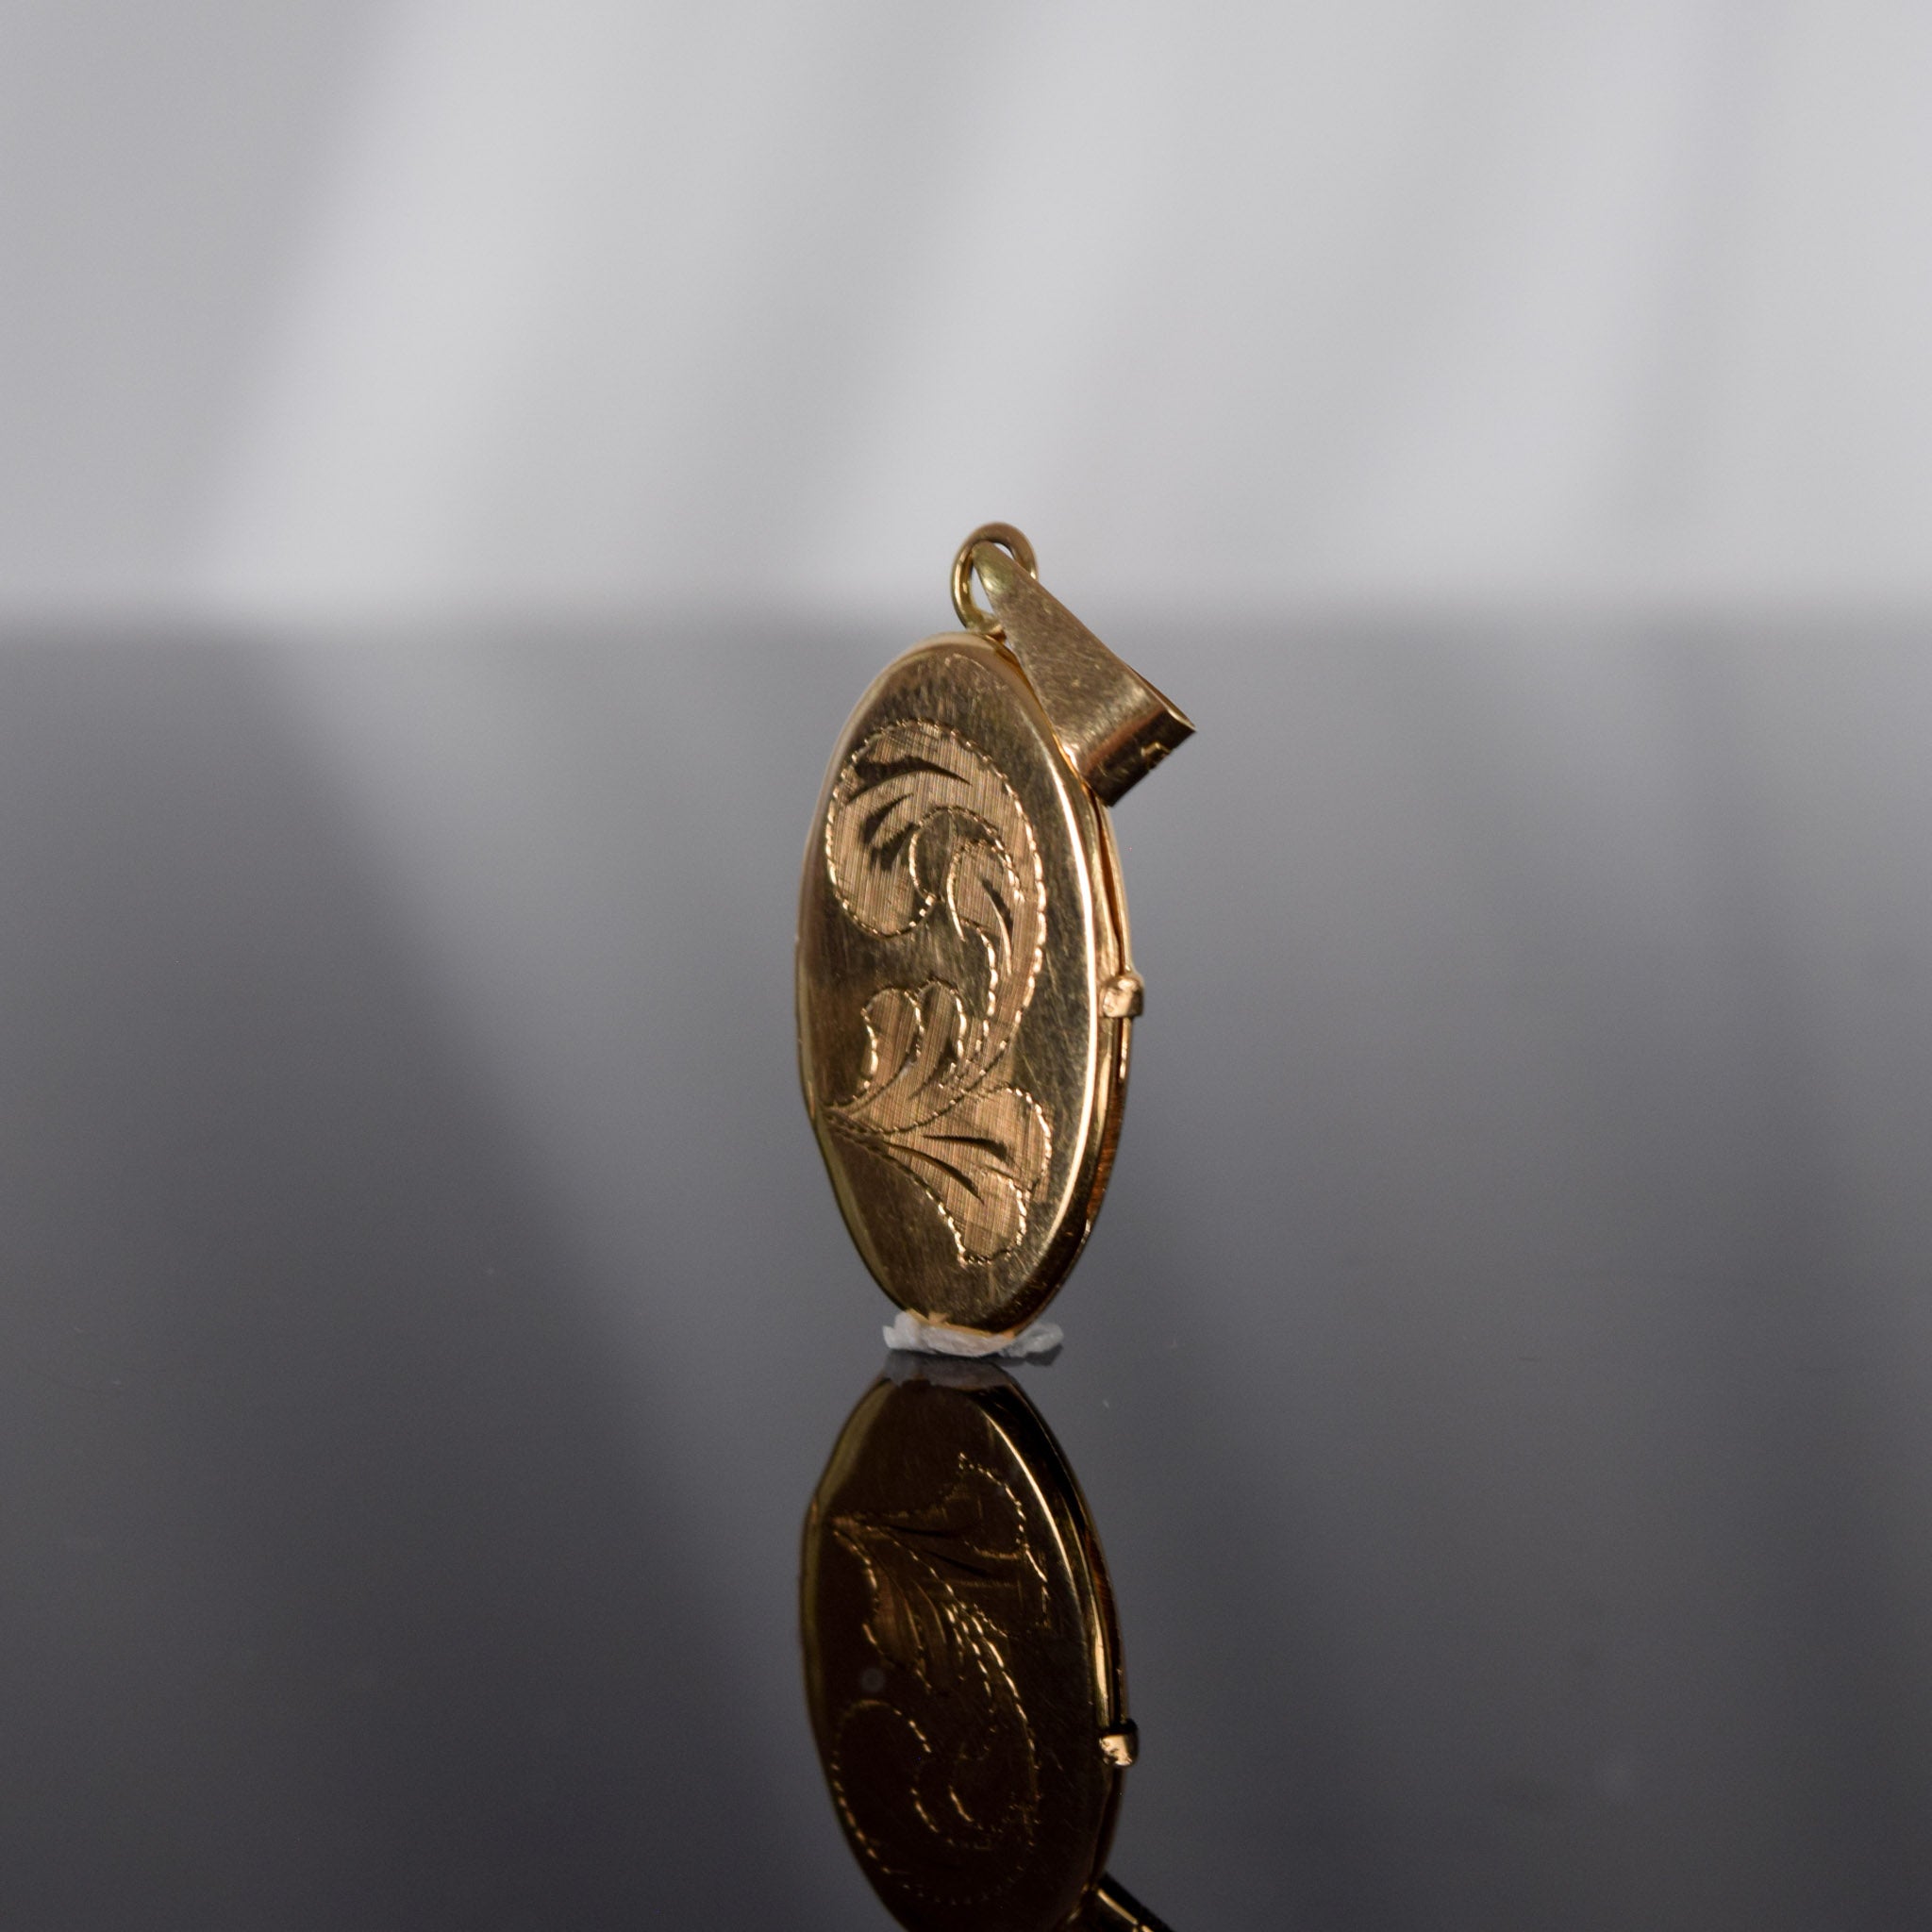 vintage gold locket for sale, folklor